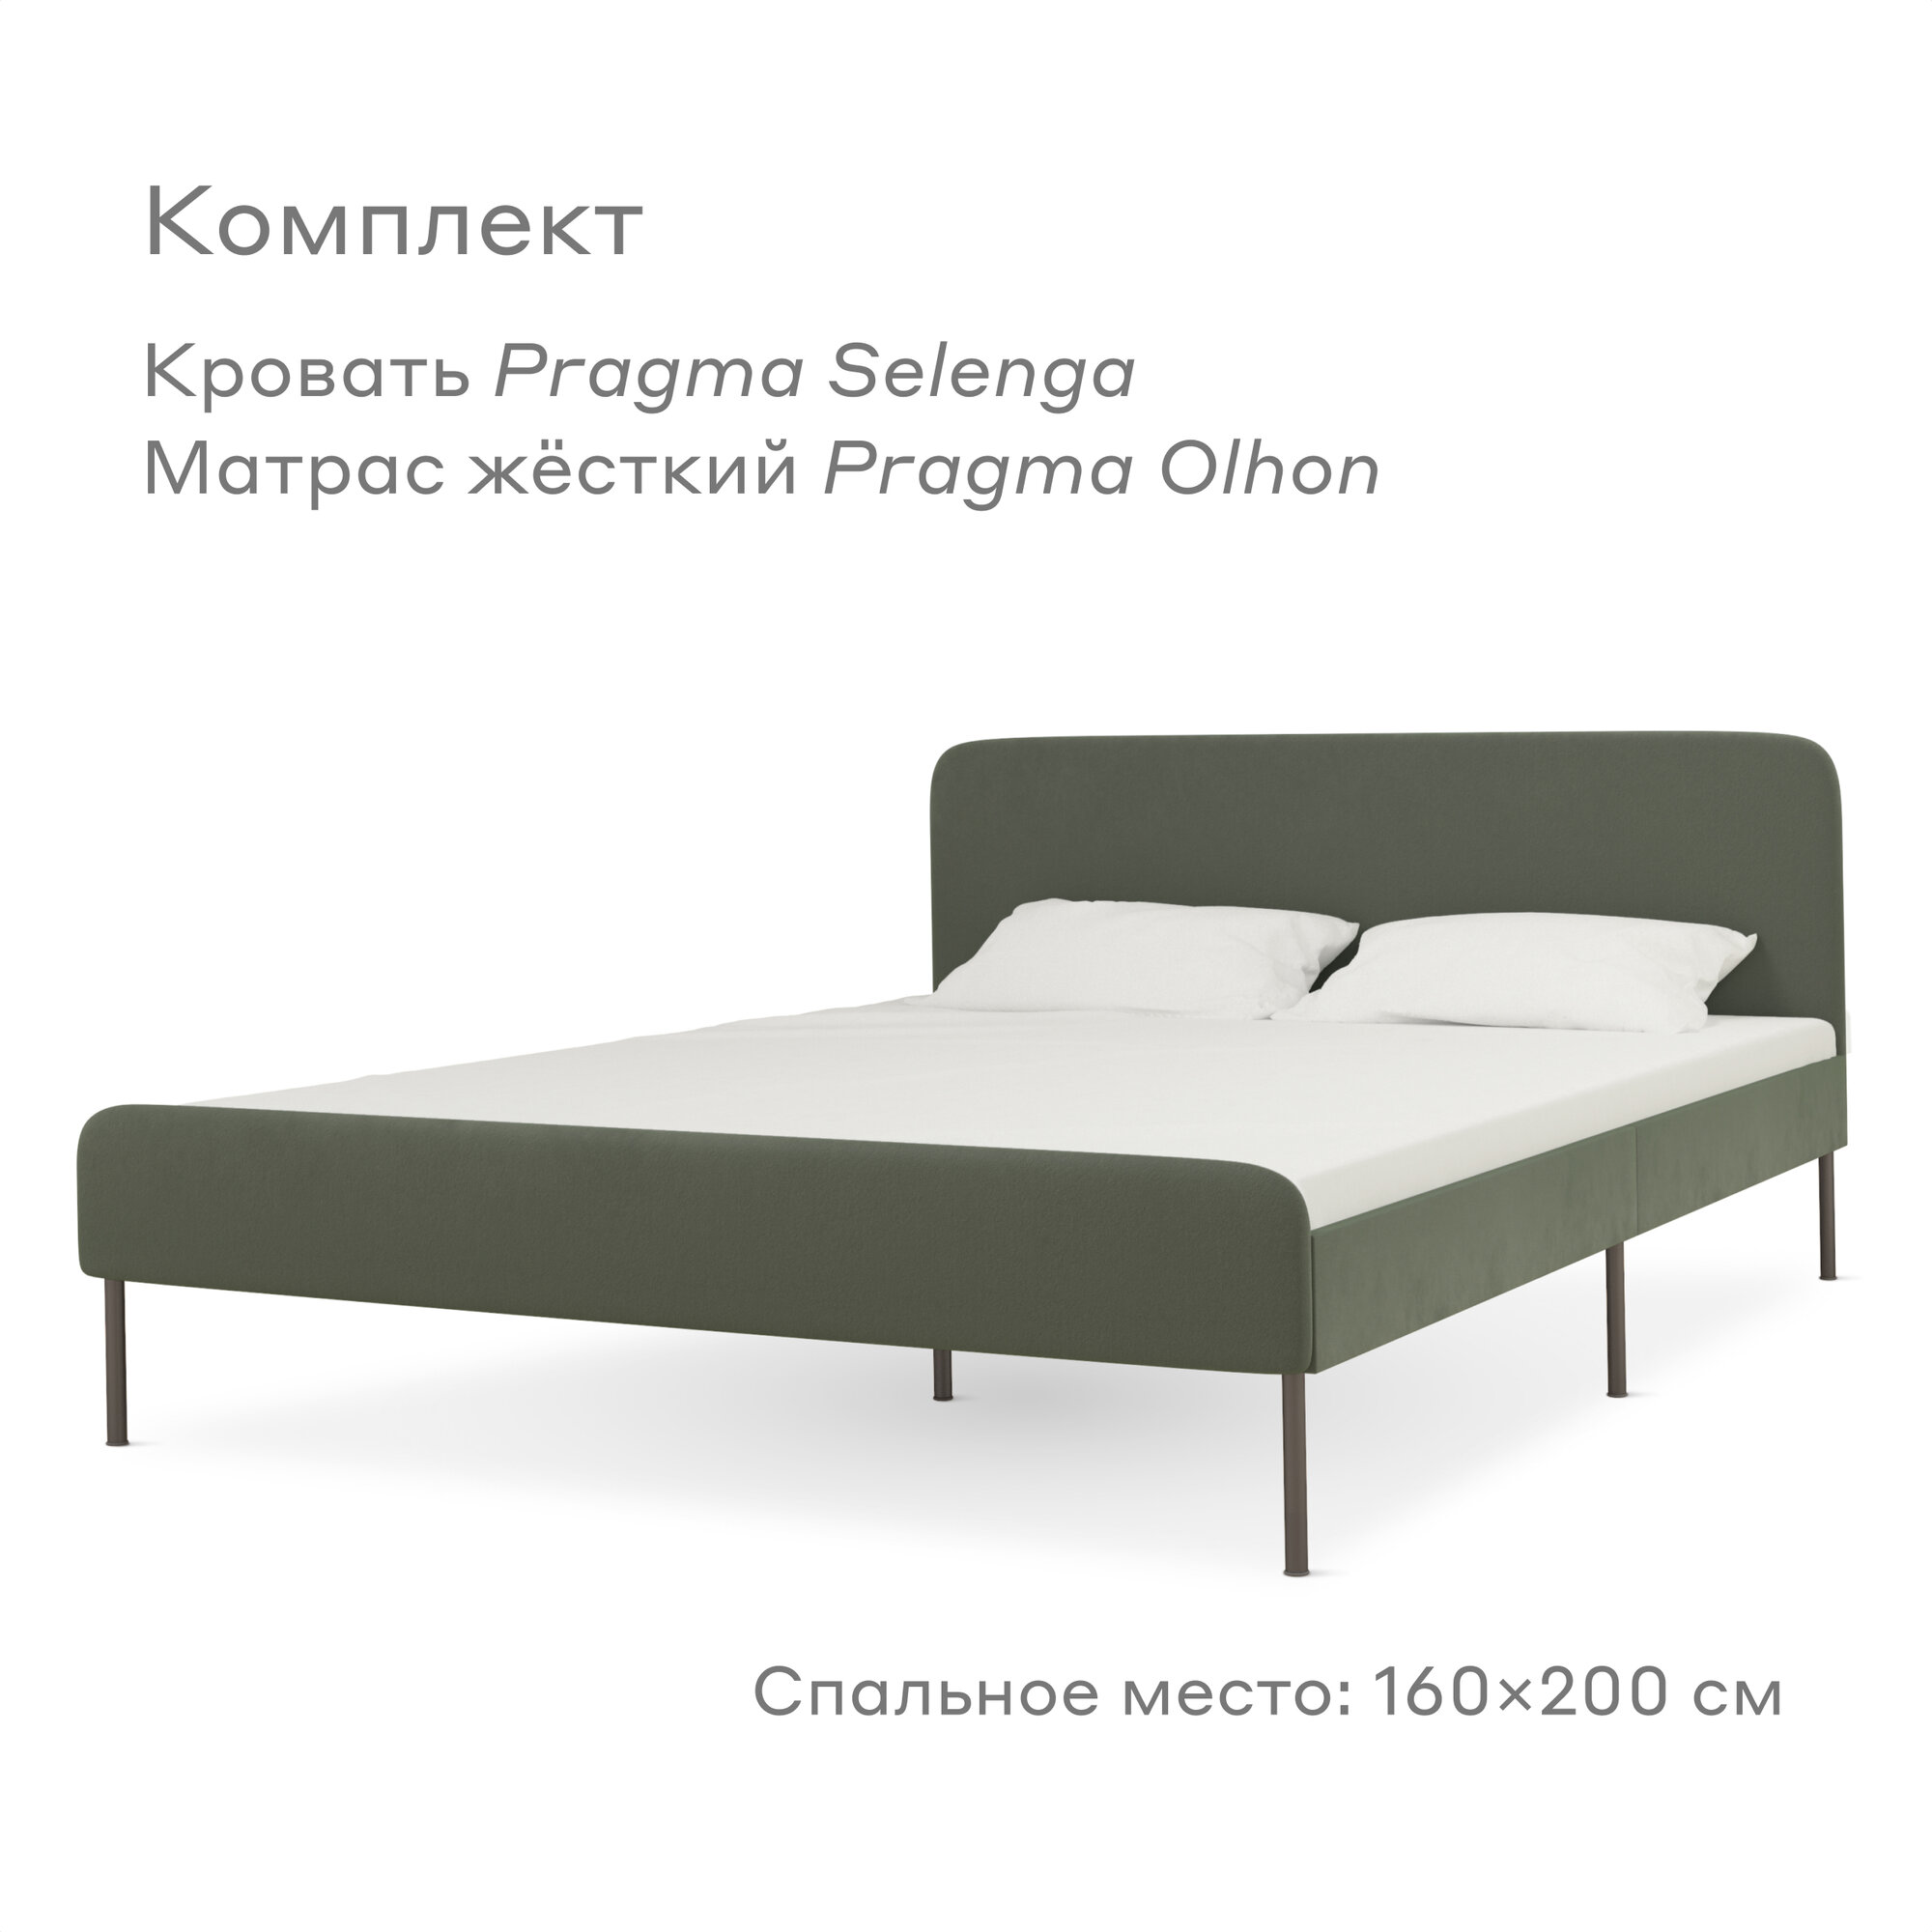 Кровать Pragma Selenga/Olhon с жестким матрасом, размер (ДхШ): 206х164 см, спальное место (ДхШ): 200х160 см, обивка: велюр, с матрасом, цвет: зеленый